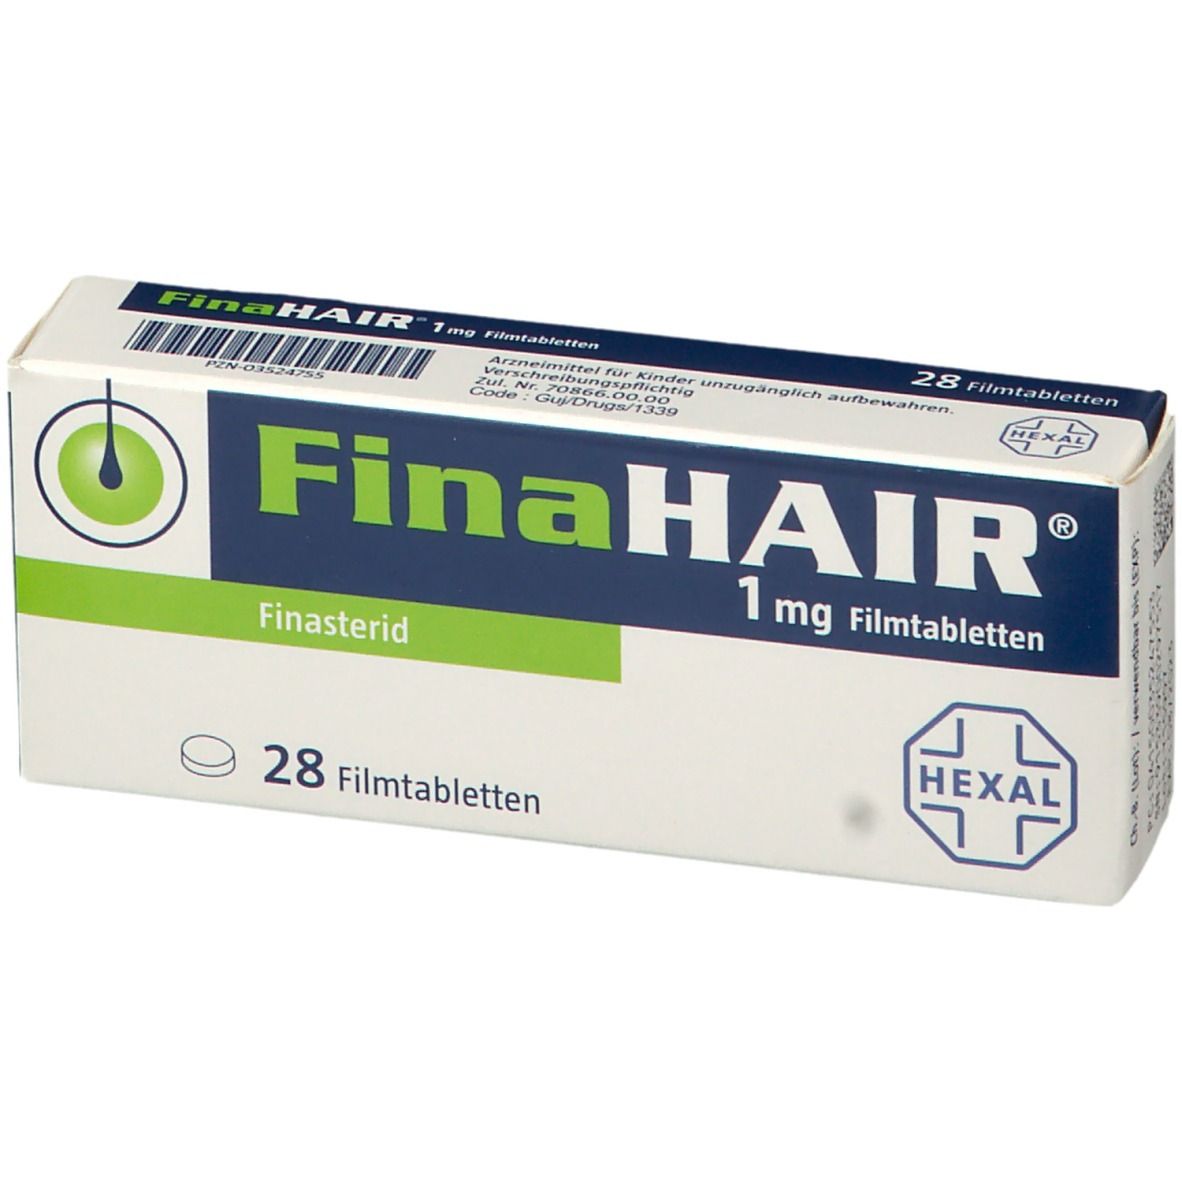 FinaHAIR® 1 mg